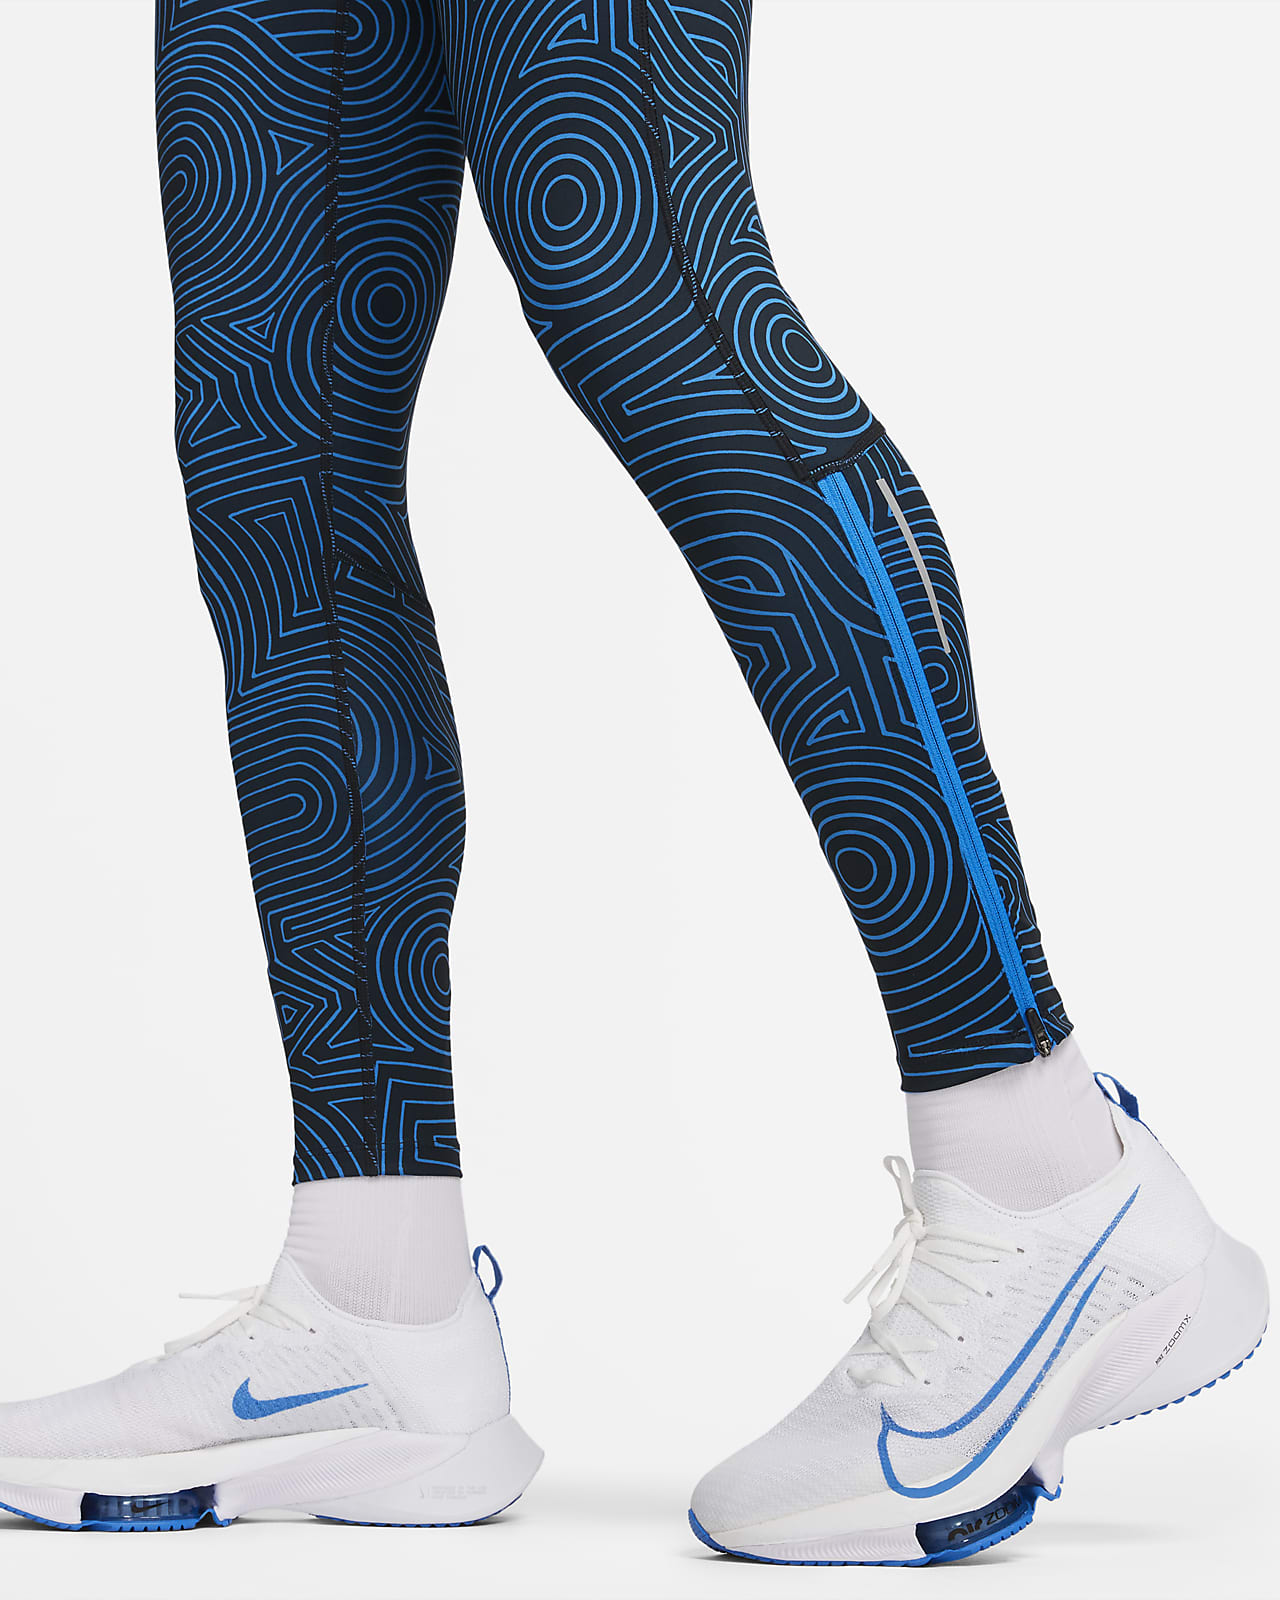 Nike Men's Running Tights